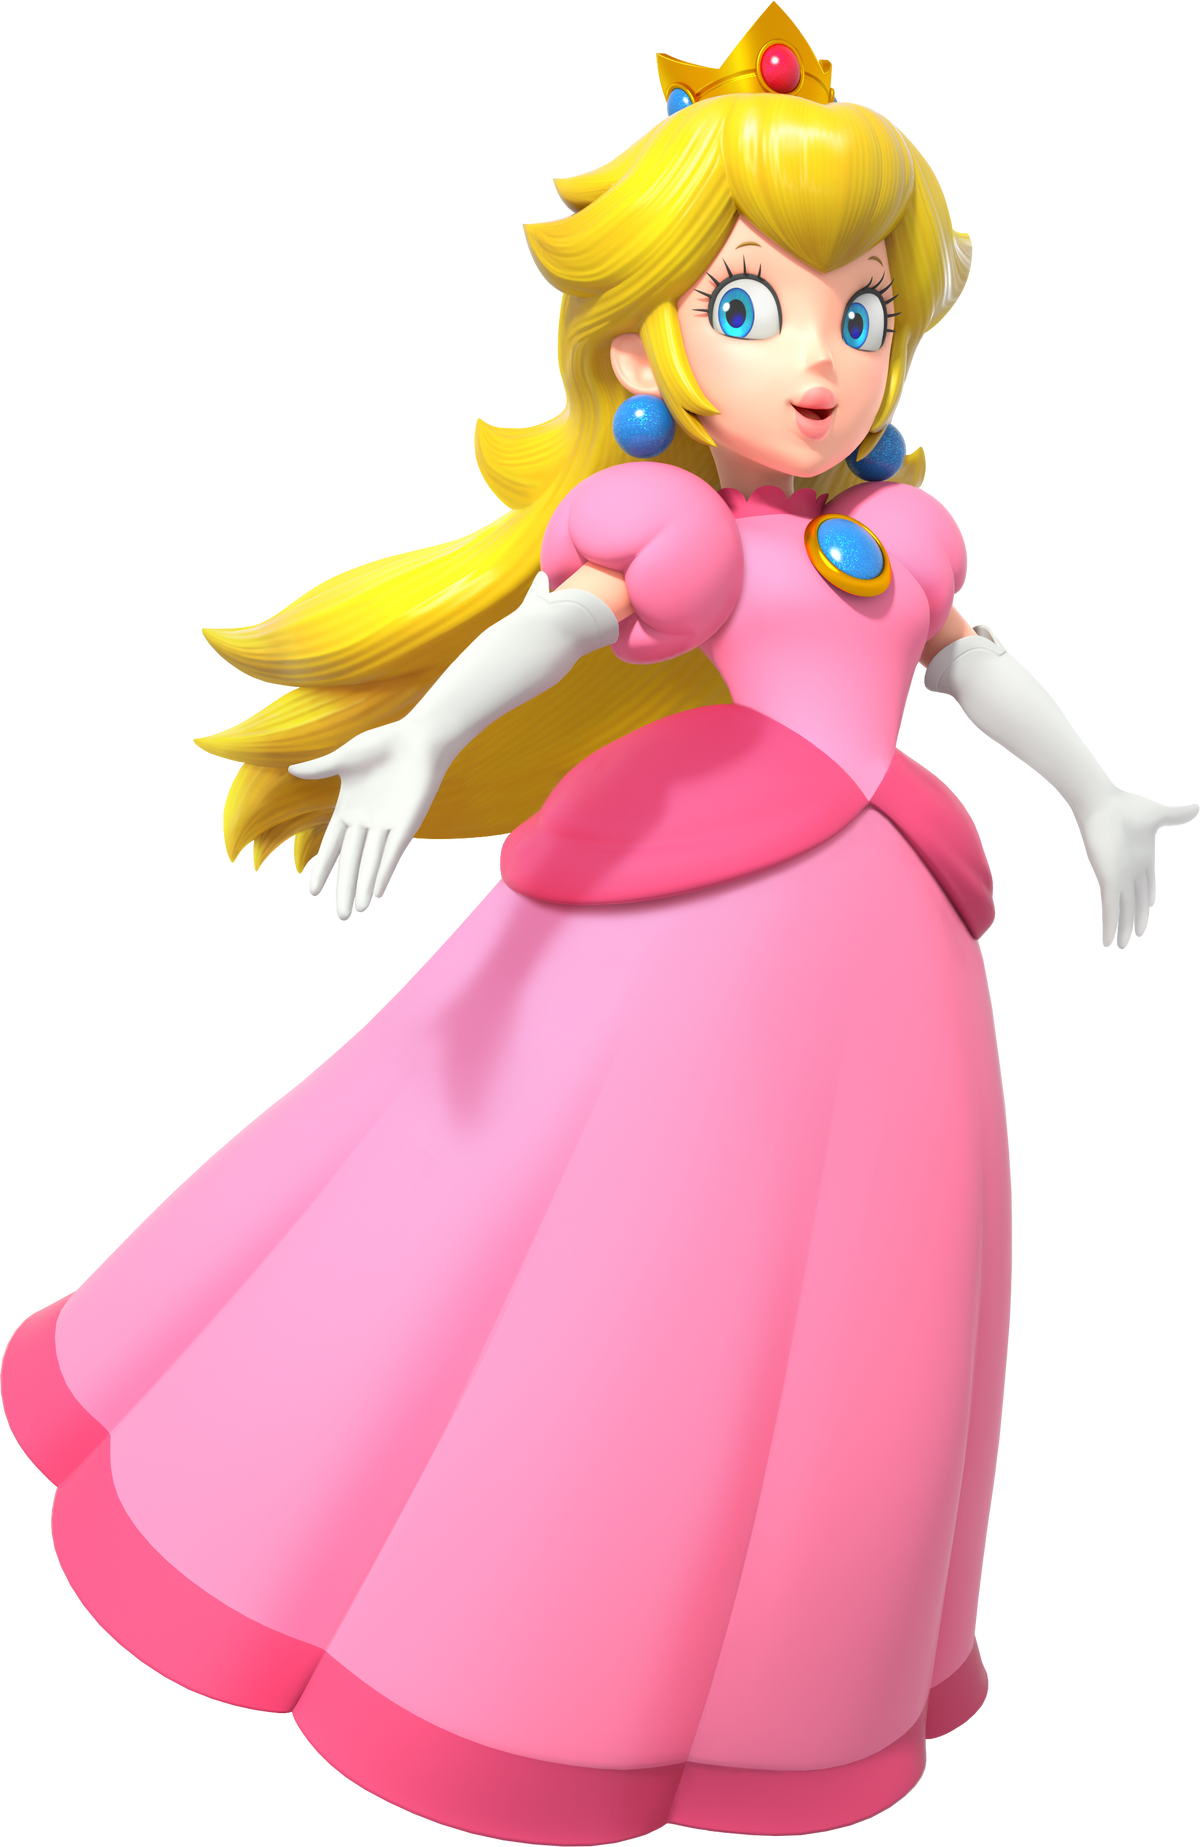 Imagem mostra Princesa Peach sem maquiagem característica da personagem -  Millenium